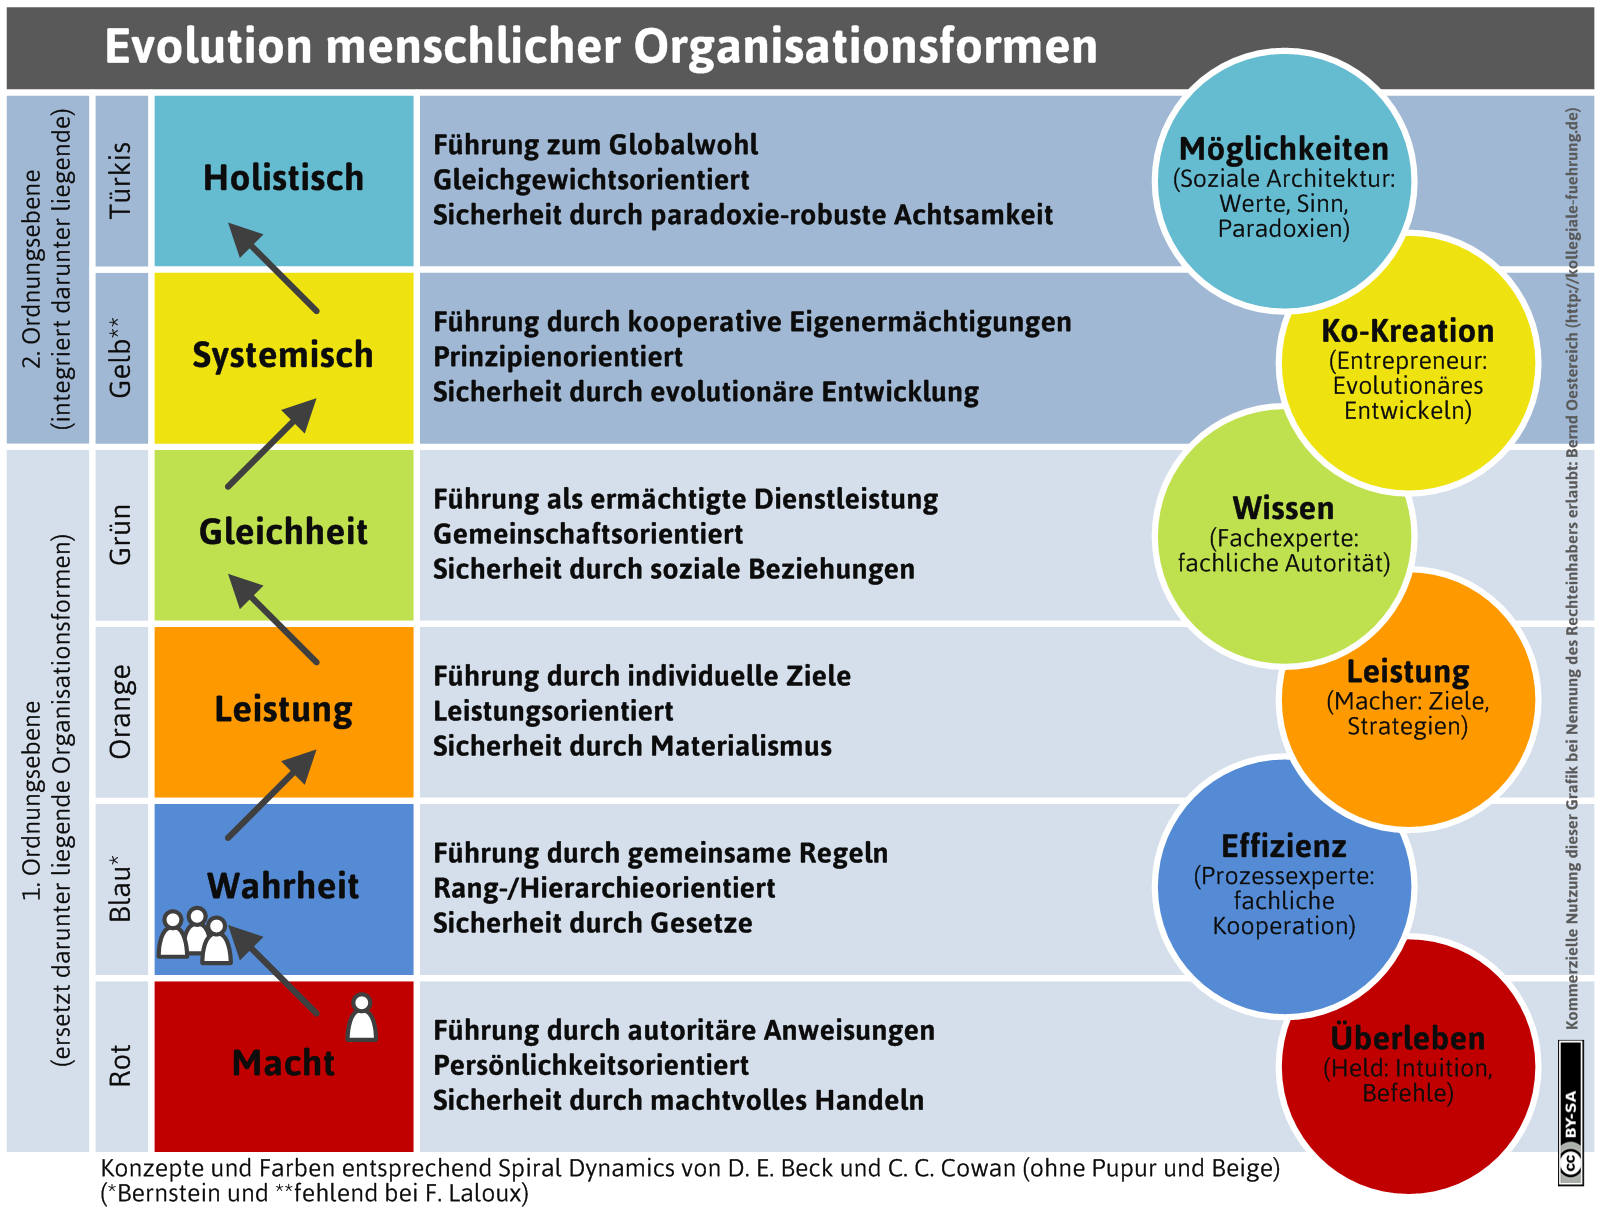 Die Evolution menschlicher Organisationsformen (http://kollegiale-fuehrung.de/portfolio-item/evolution-organisationsformen/)